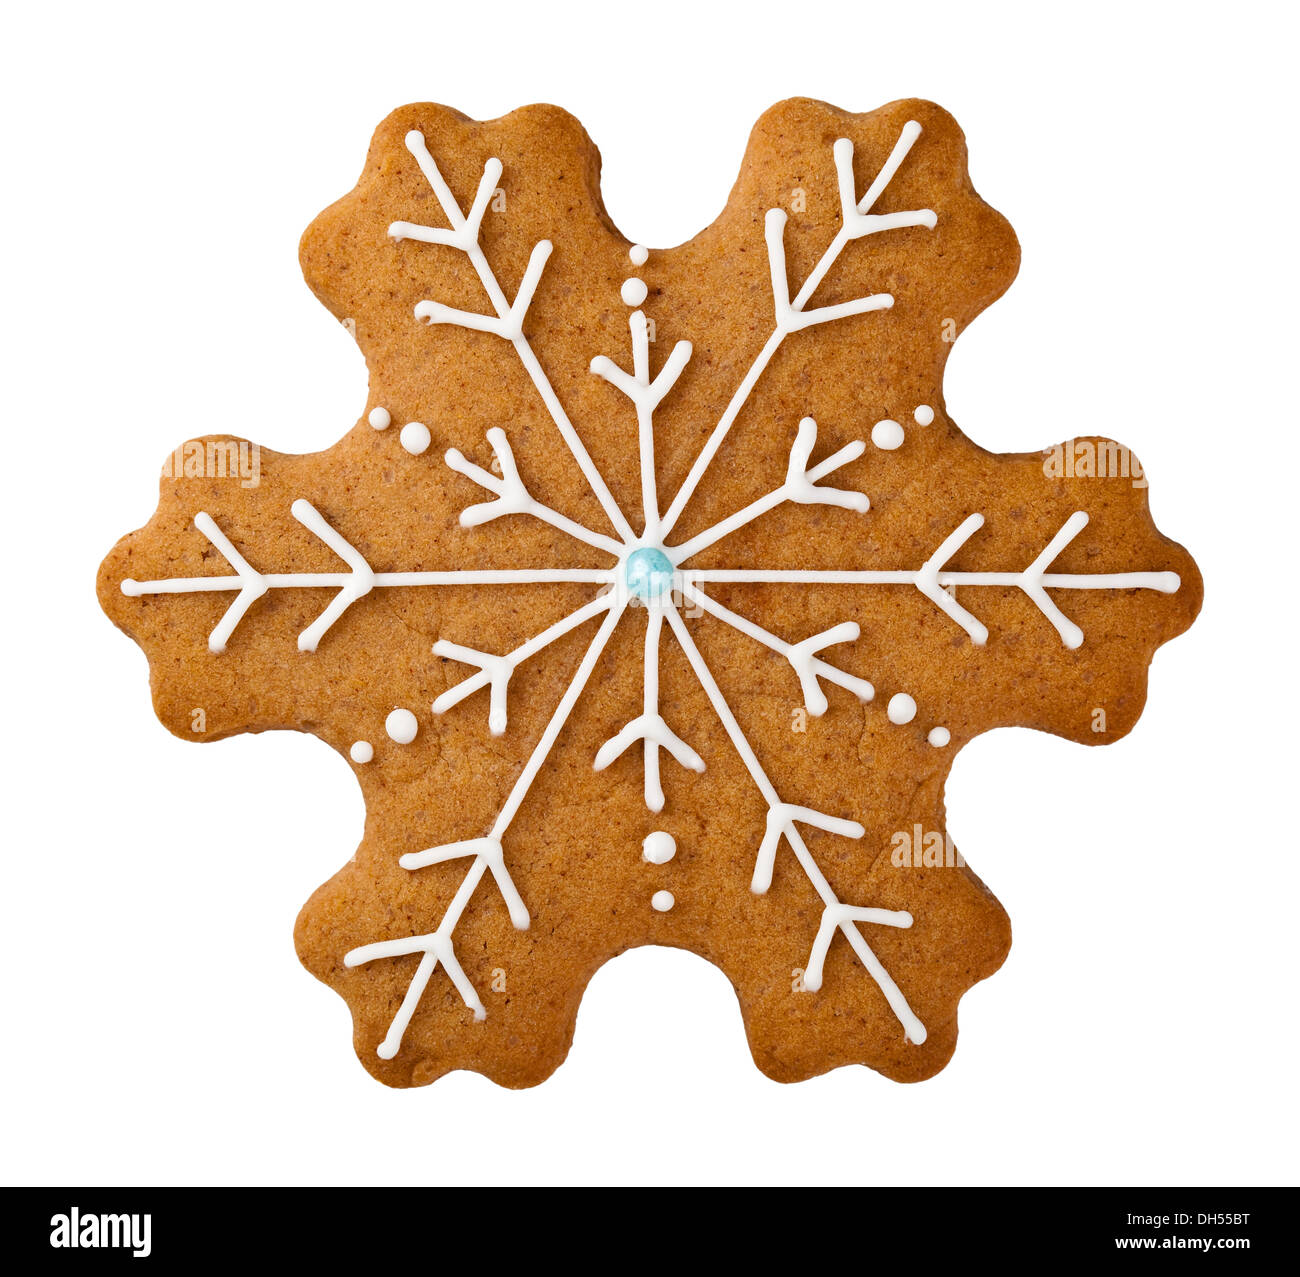 Gingerbread cookie en forme de flocon isolé sur fond blanc Banque D'Images